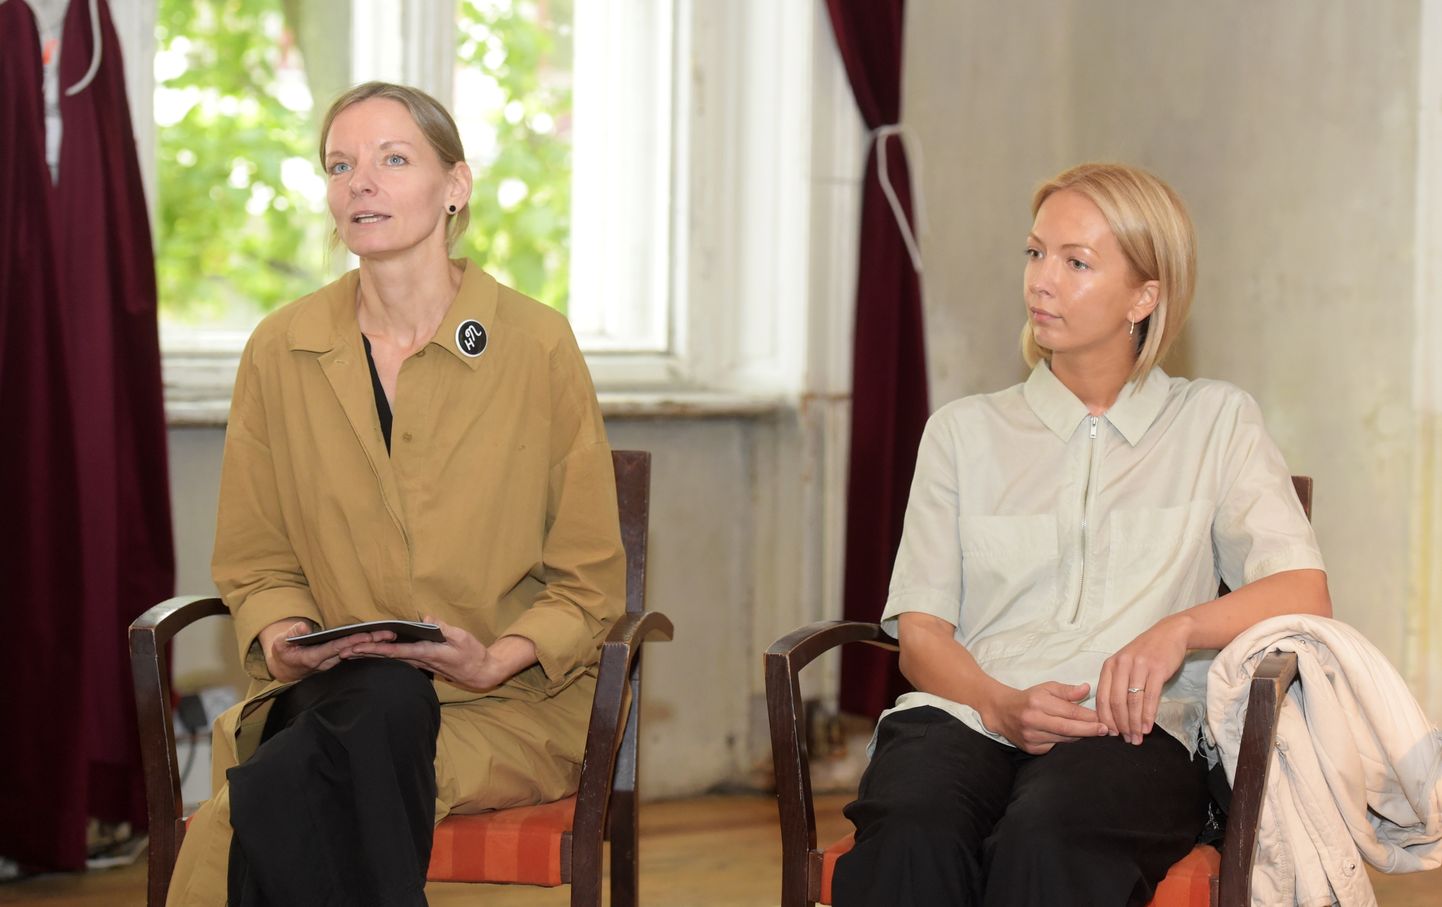 Festivāla direktore Gundega Laiviņa (no kreisās) un scenogrāfe Paulīne Kalniņa piedalās preses konferencē, kurā informē par starptautisko jaunā teātra festivālu "Homo Novus".